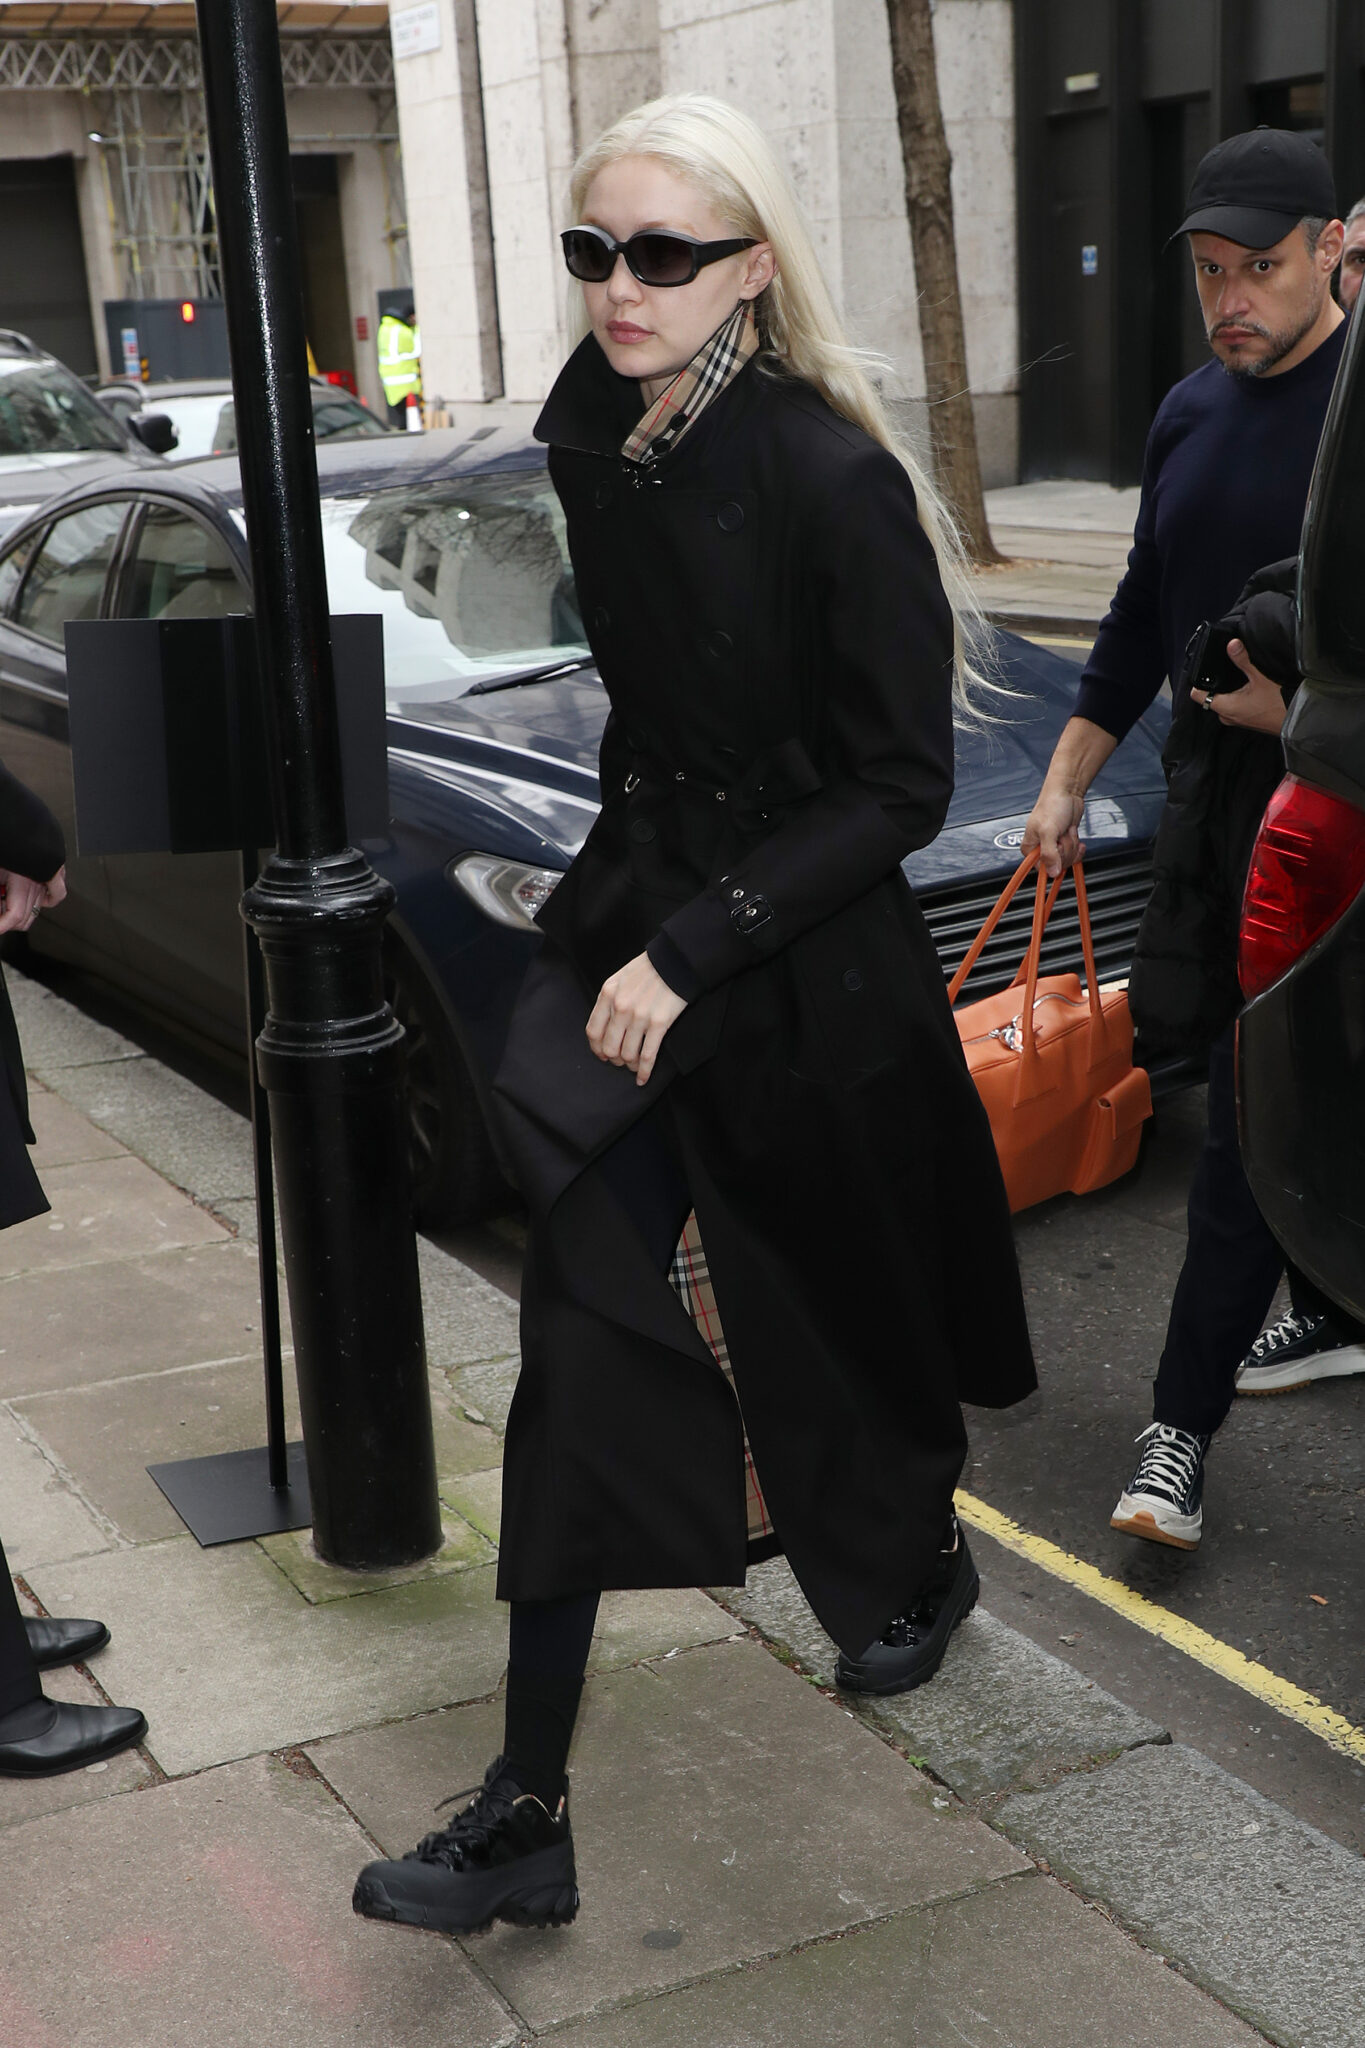 Gigi Hadid i London (Foto: Neil Mockford/GC Images via Getty)